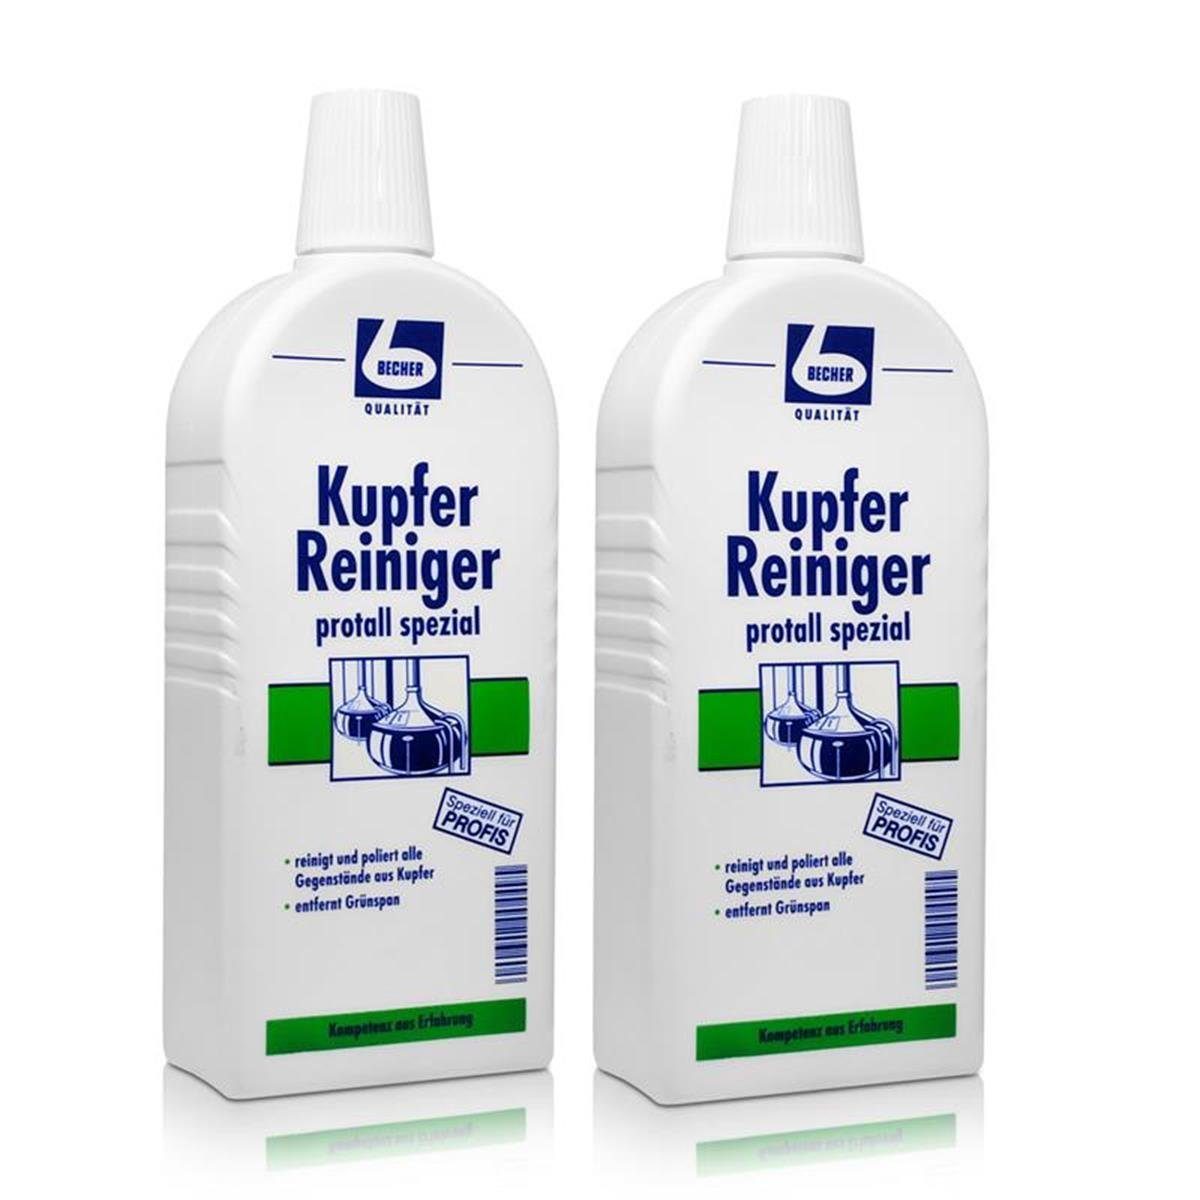 500 ml Becher protall Kupfer Becher Dr. 2x Reiniger Dr. Spezialwaschmittel spezial